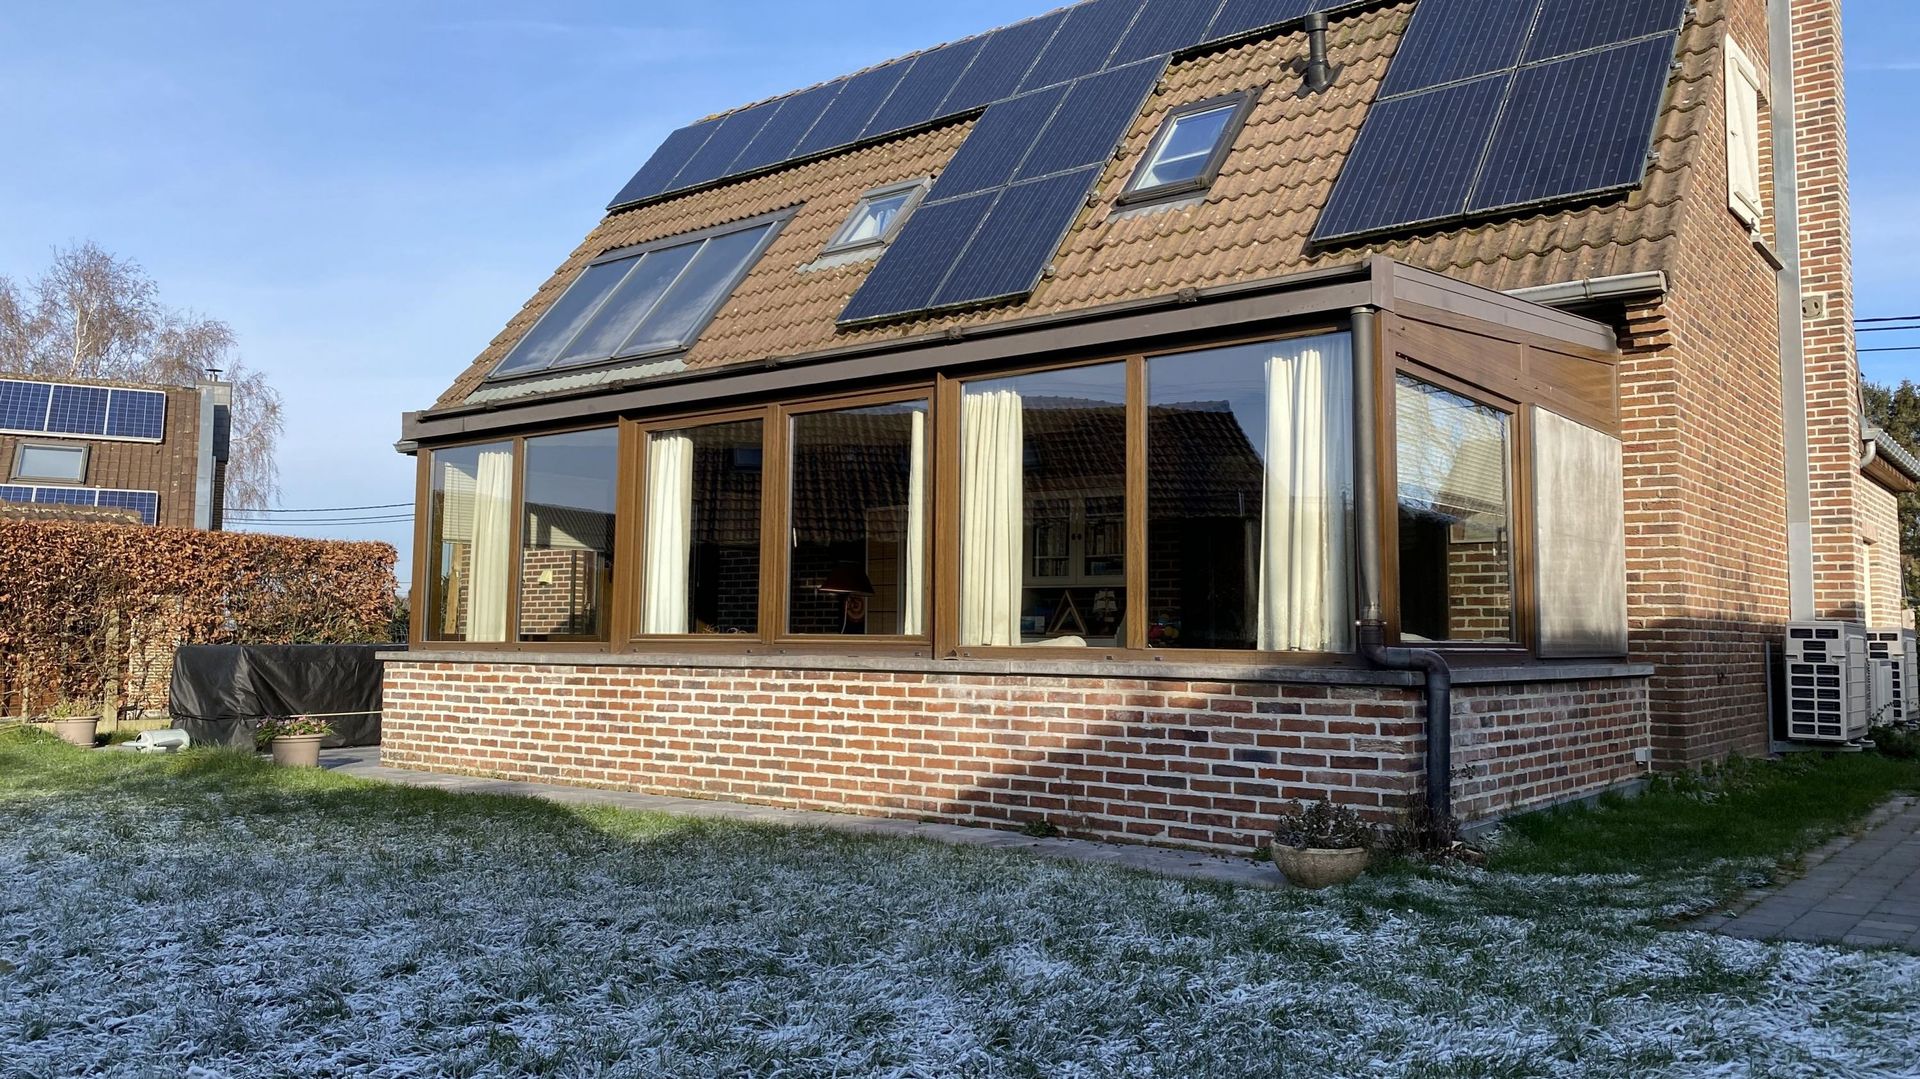 Par temps de fortes gelées, les installateurs photovoltaïques doivent souvent attendre les rayons du soleil de l’après-midi pour pouvoir travailler sur les toits en toute sécurité.